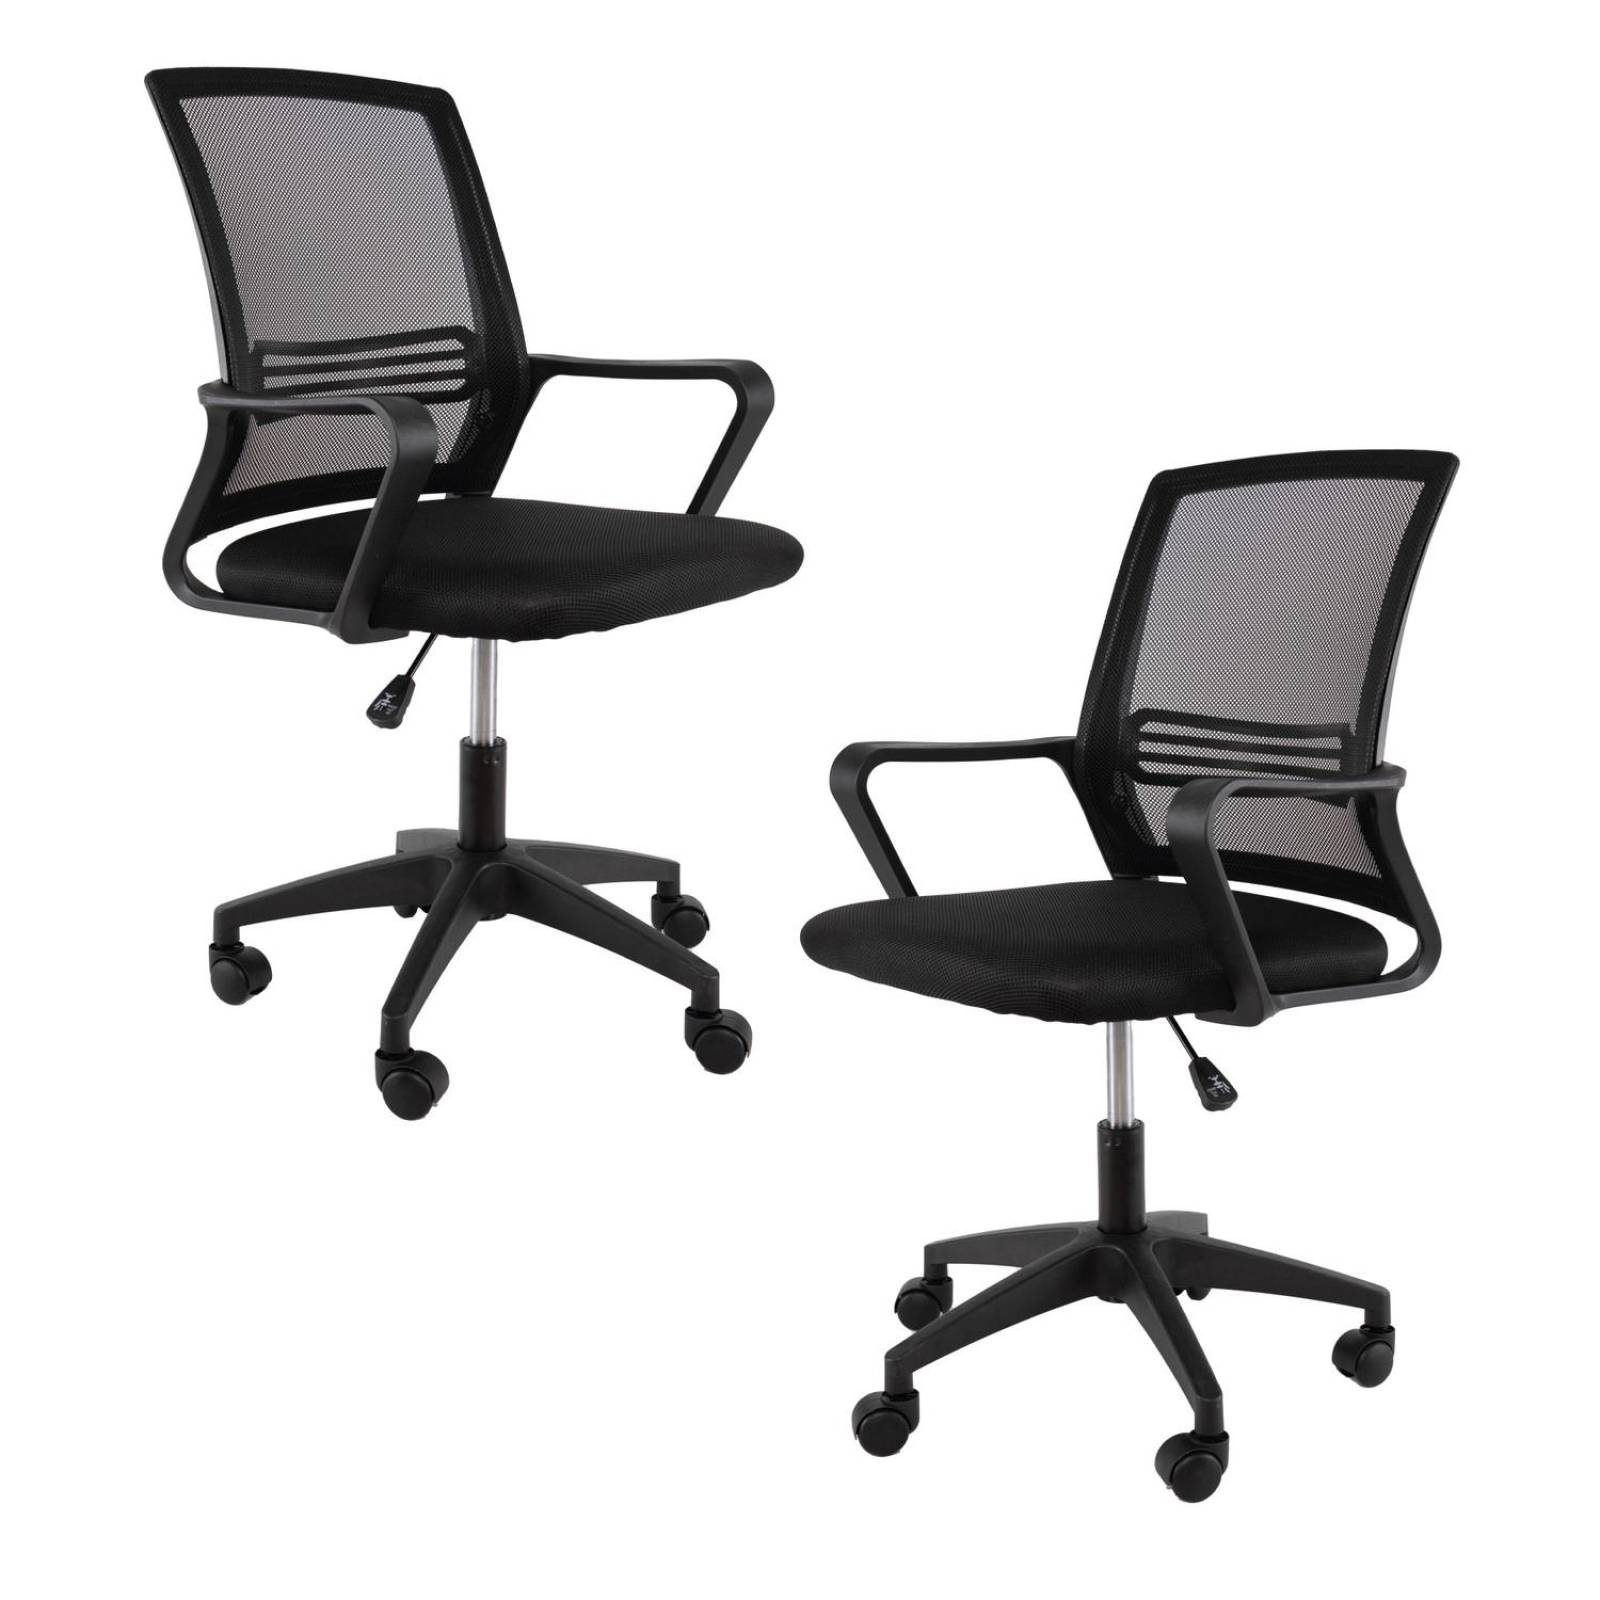 silla de oficina Formula de estilo moderno y cómoda